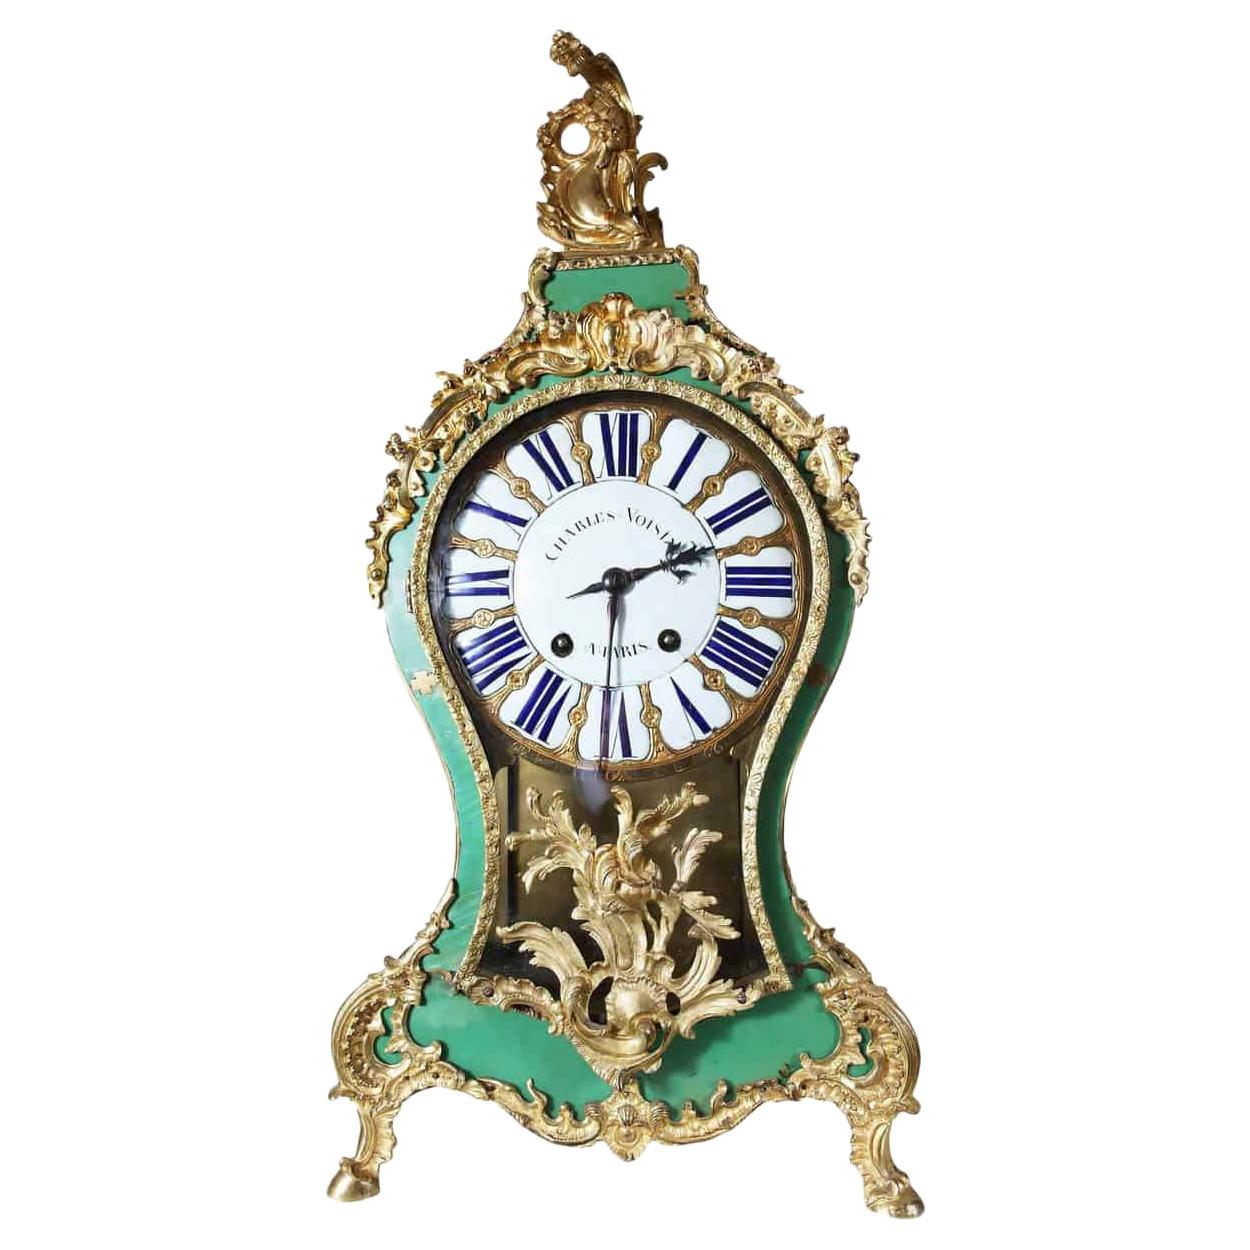 Часы 18 века. Louis Cartel Charlemagne часы. Часы 18 века на ратушах. Часы Картель золото. Г николаев часы